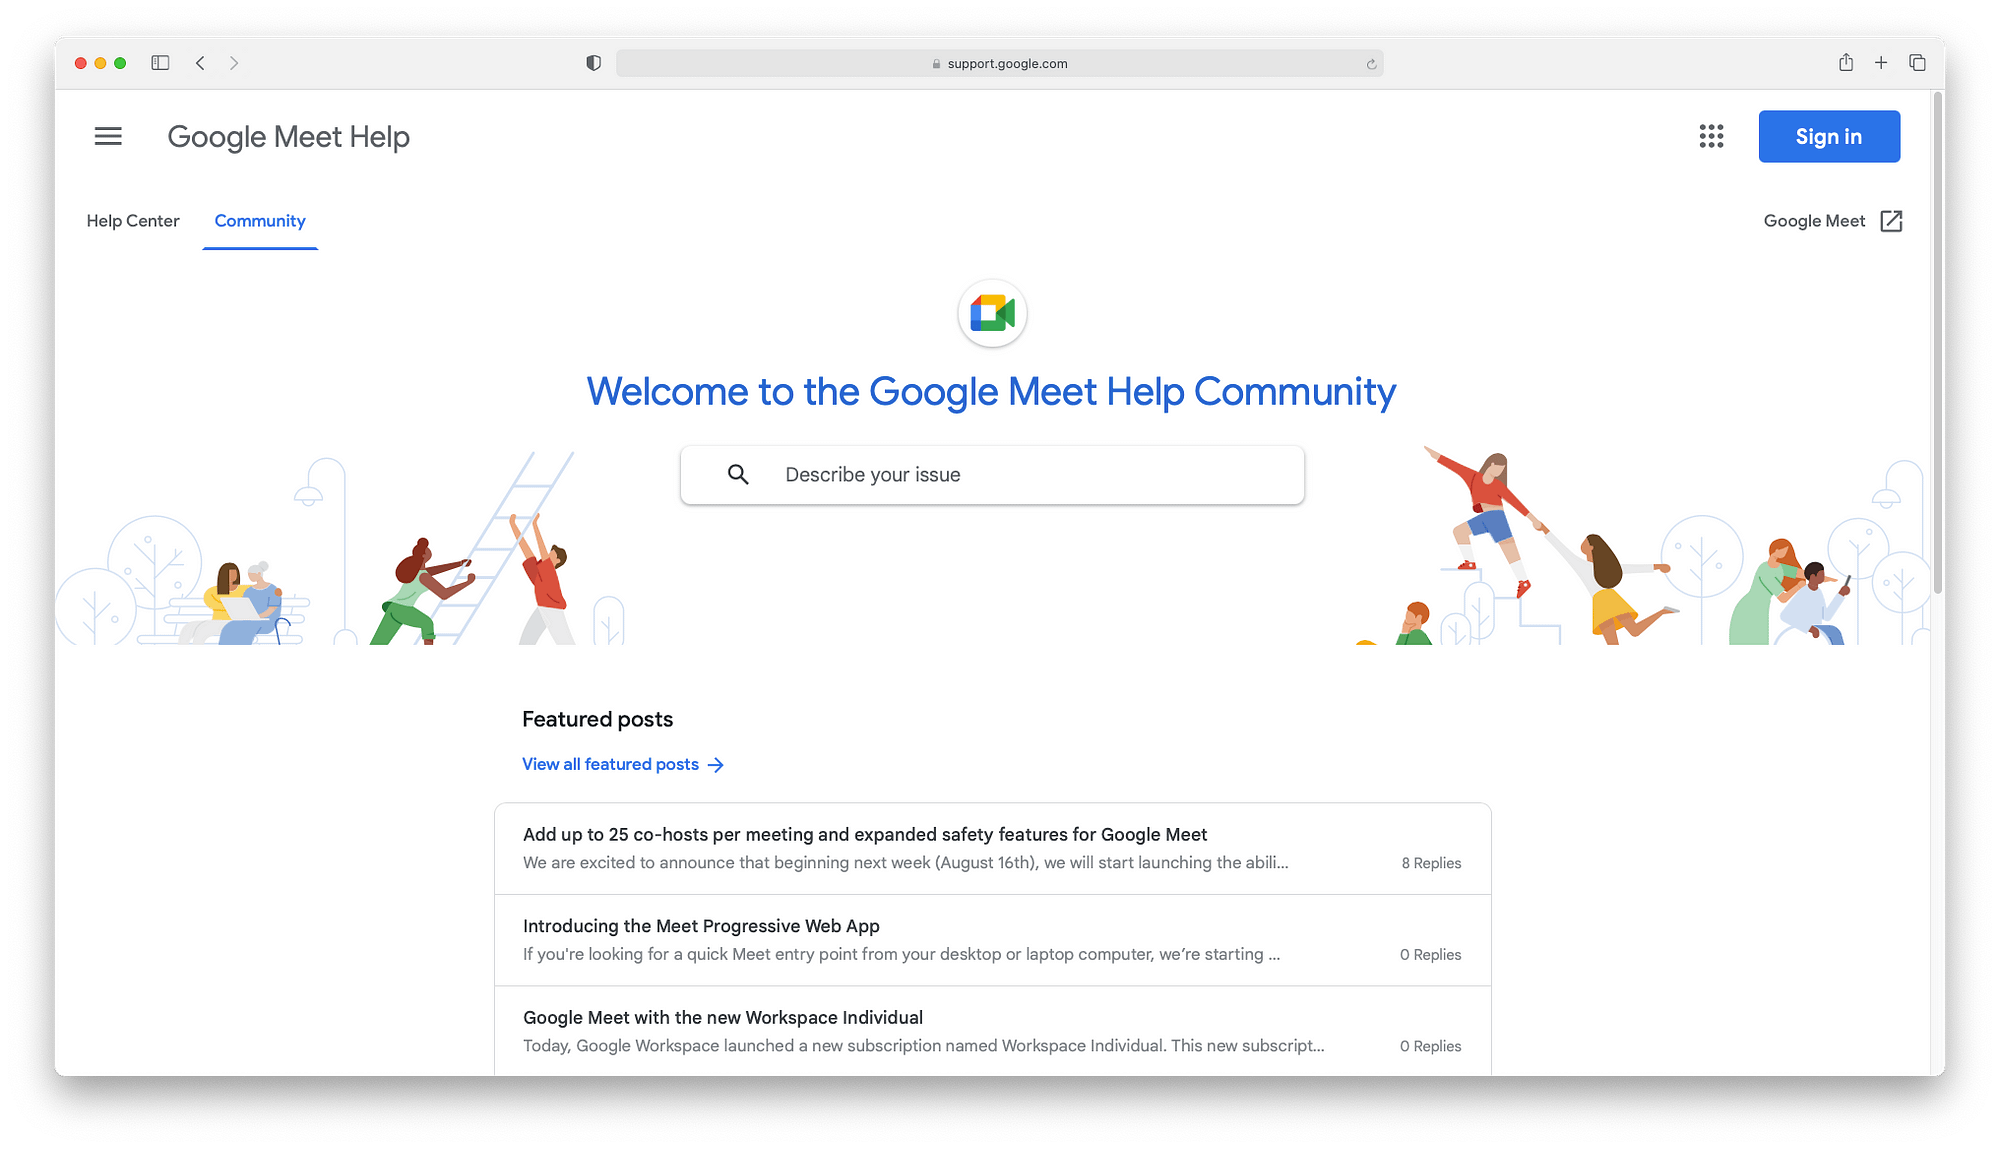 Google Meet community center